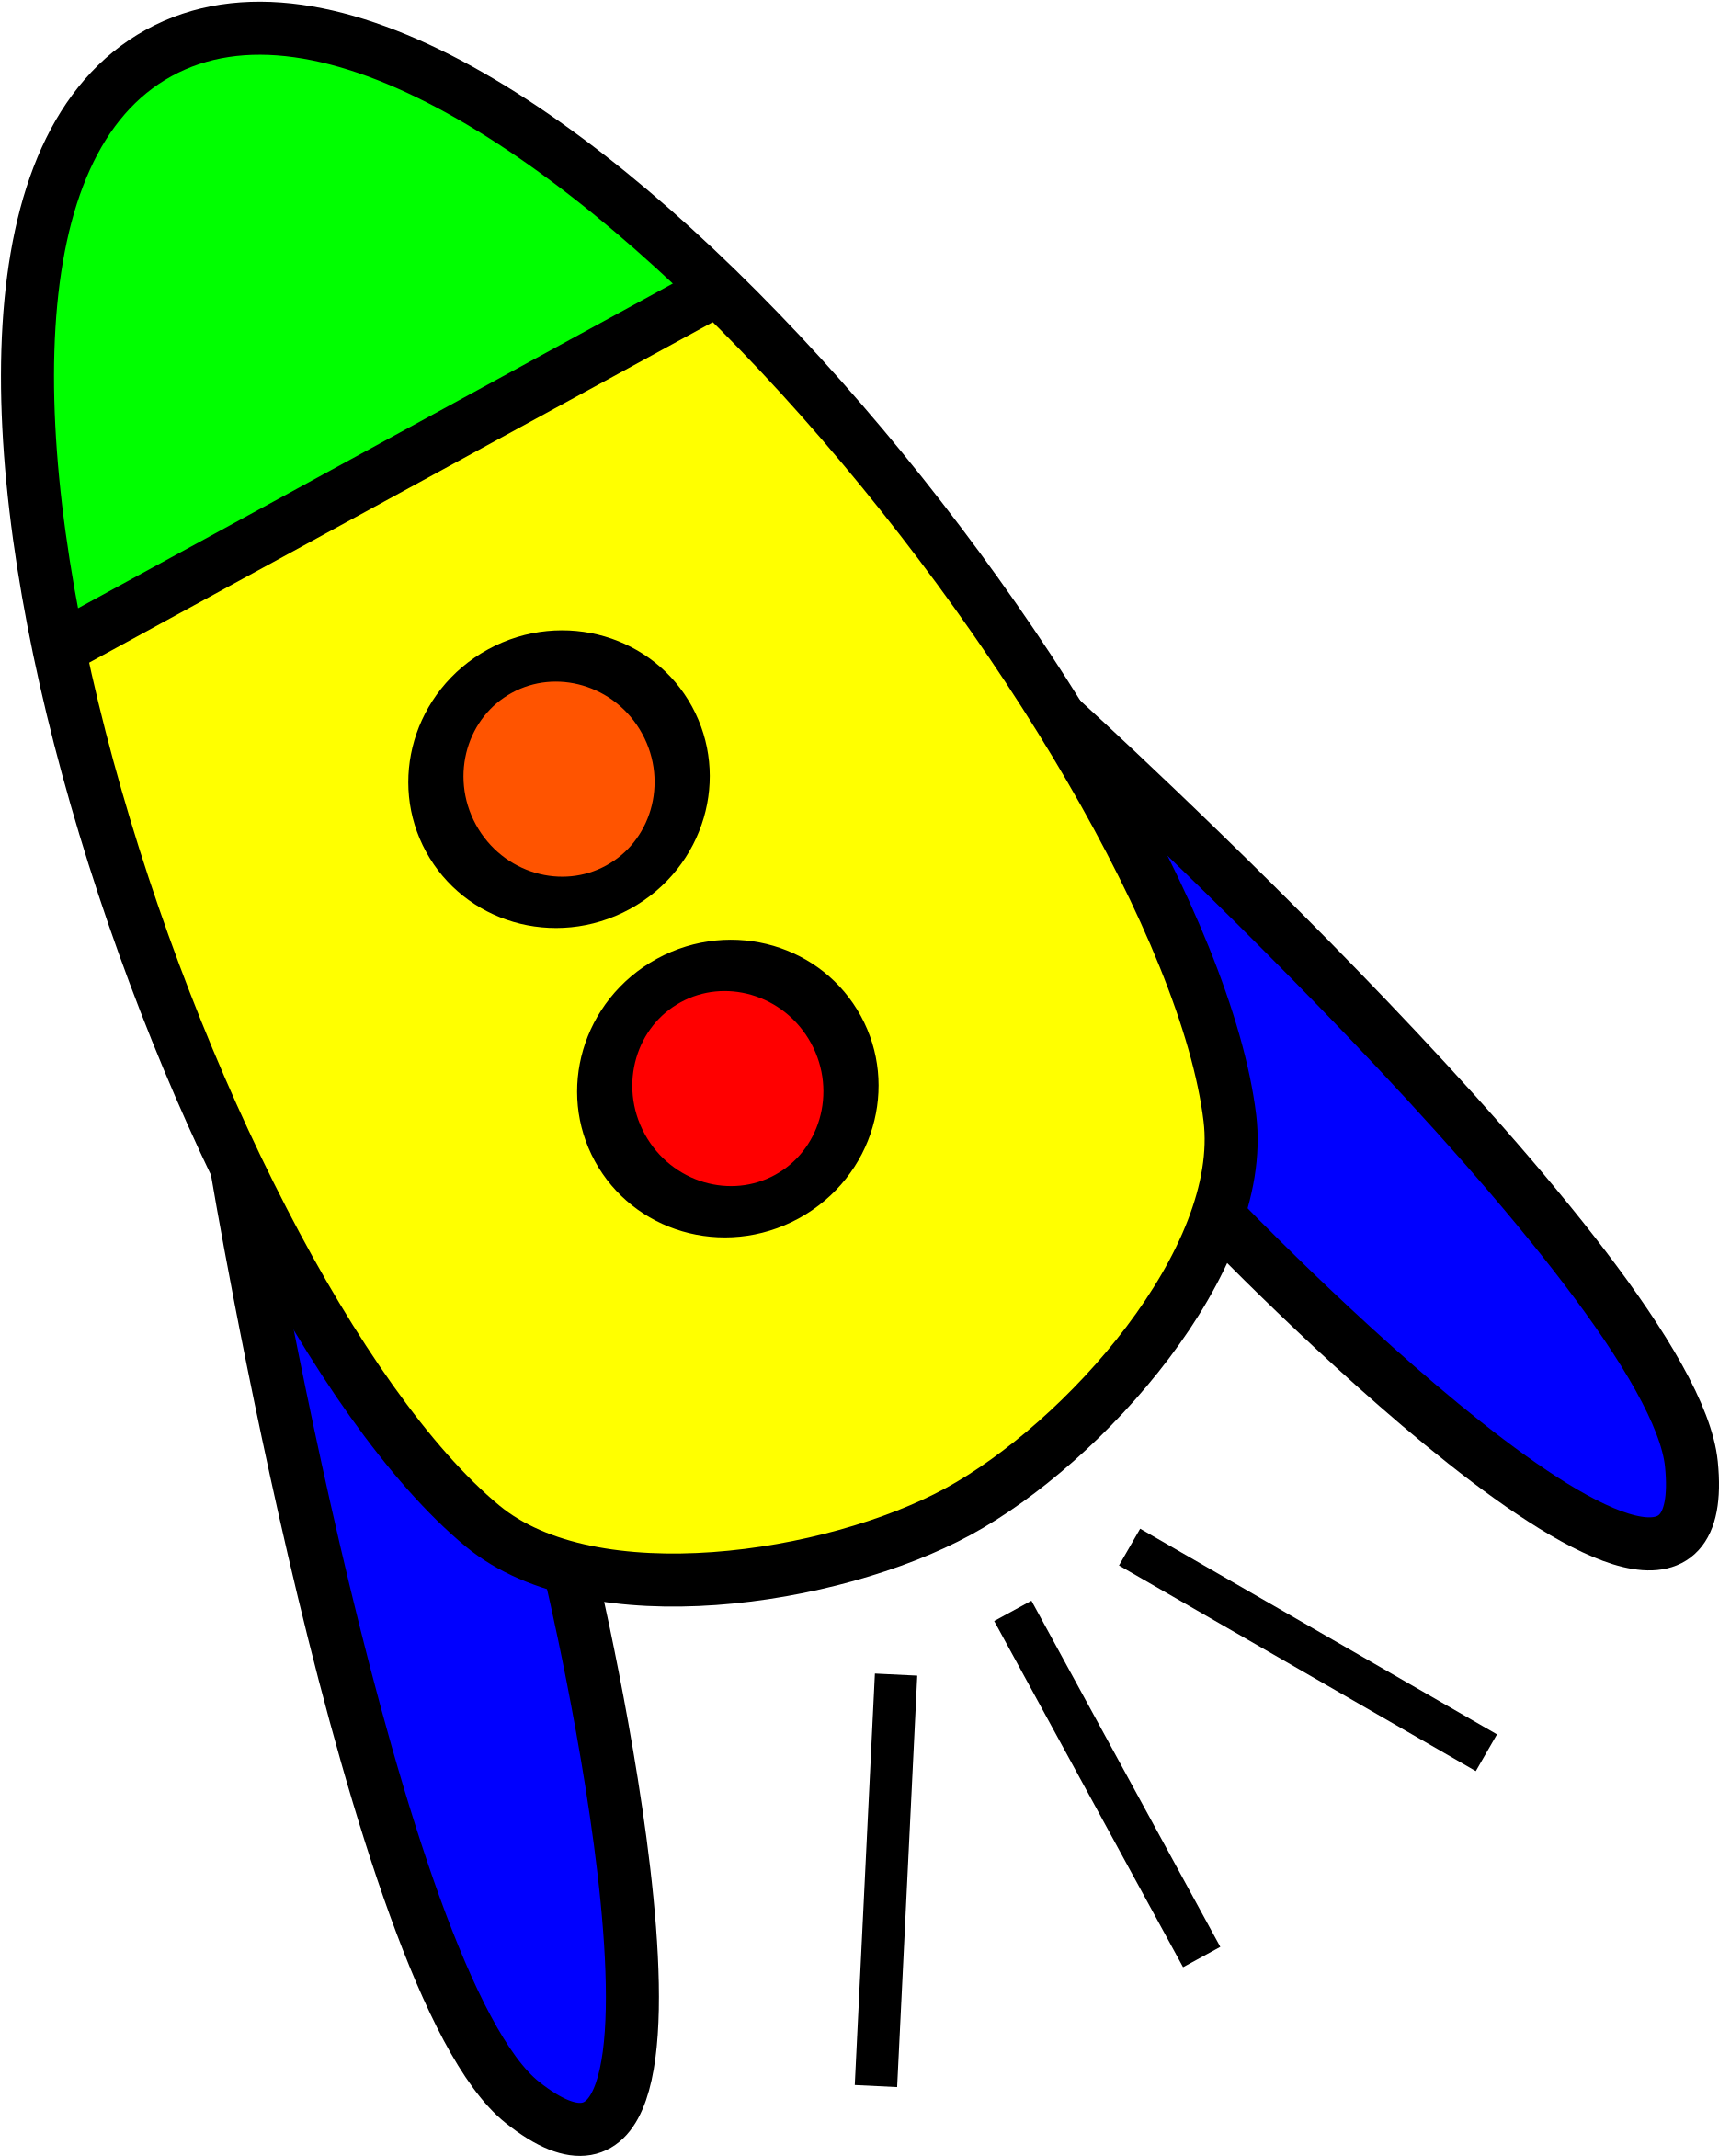 Картинка ракеты для детей цветная. Ракета для детей. Ракета рисунок. Изображение ракеты для детей. Космическая ракета картинки для детей.